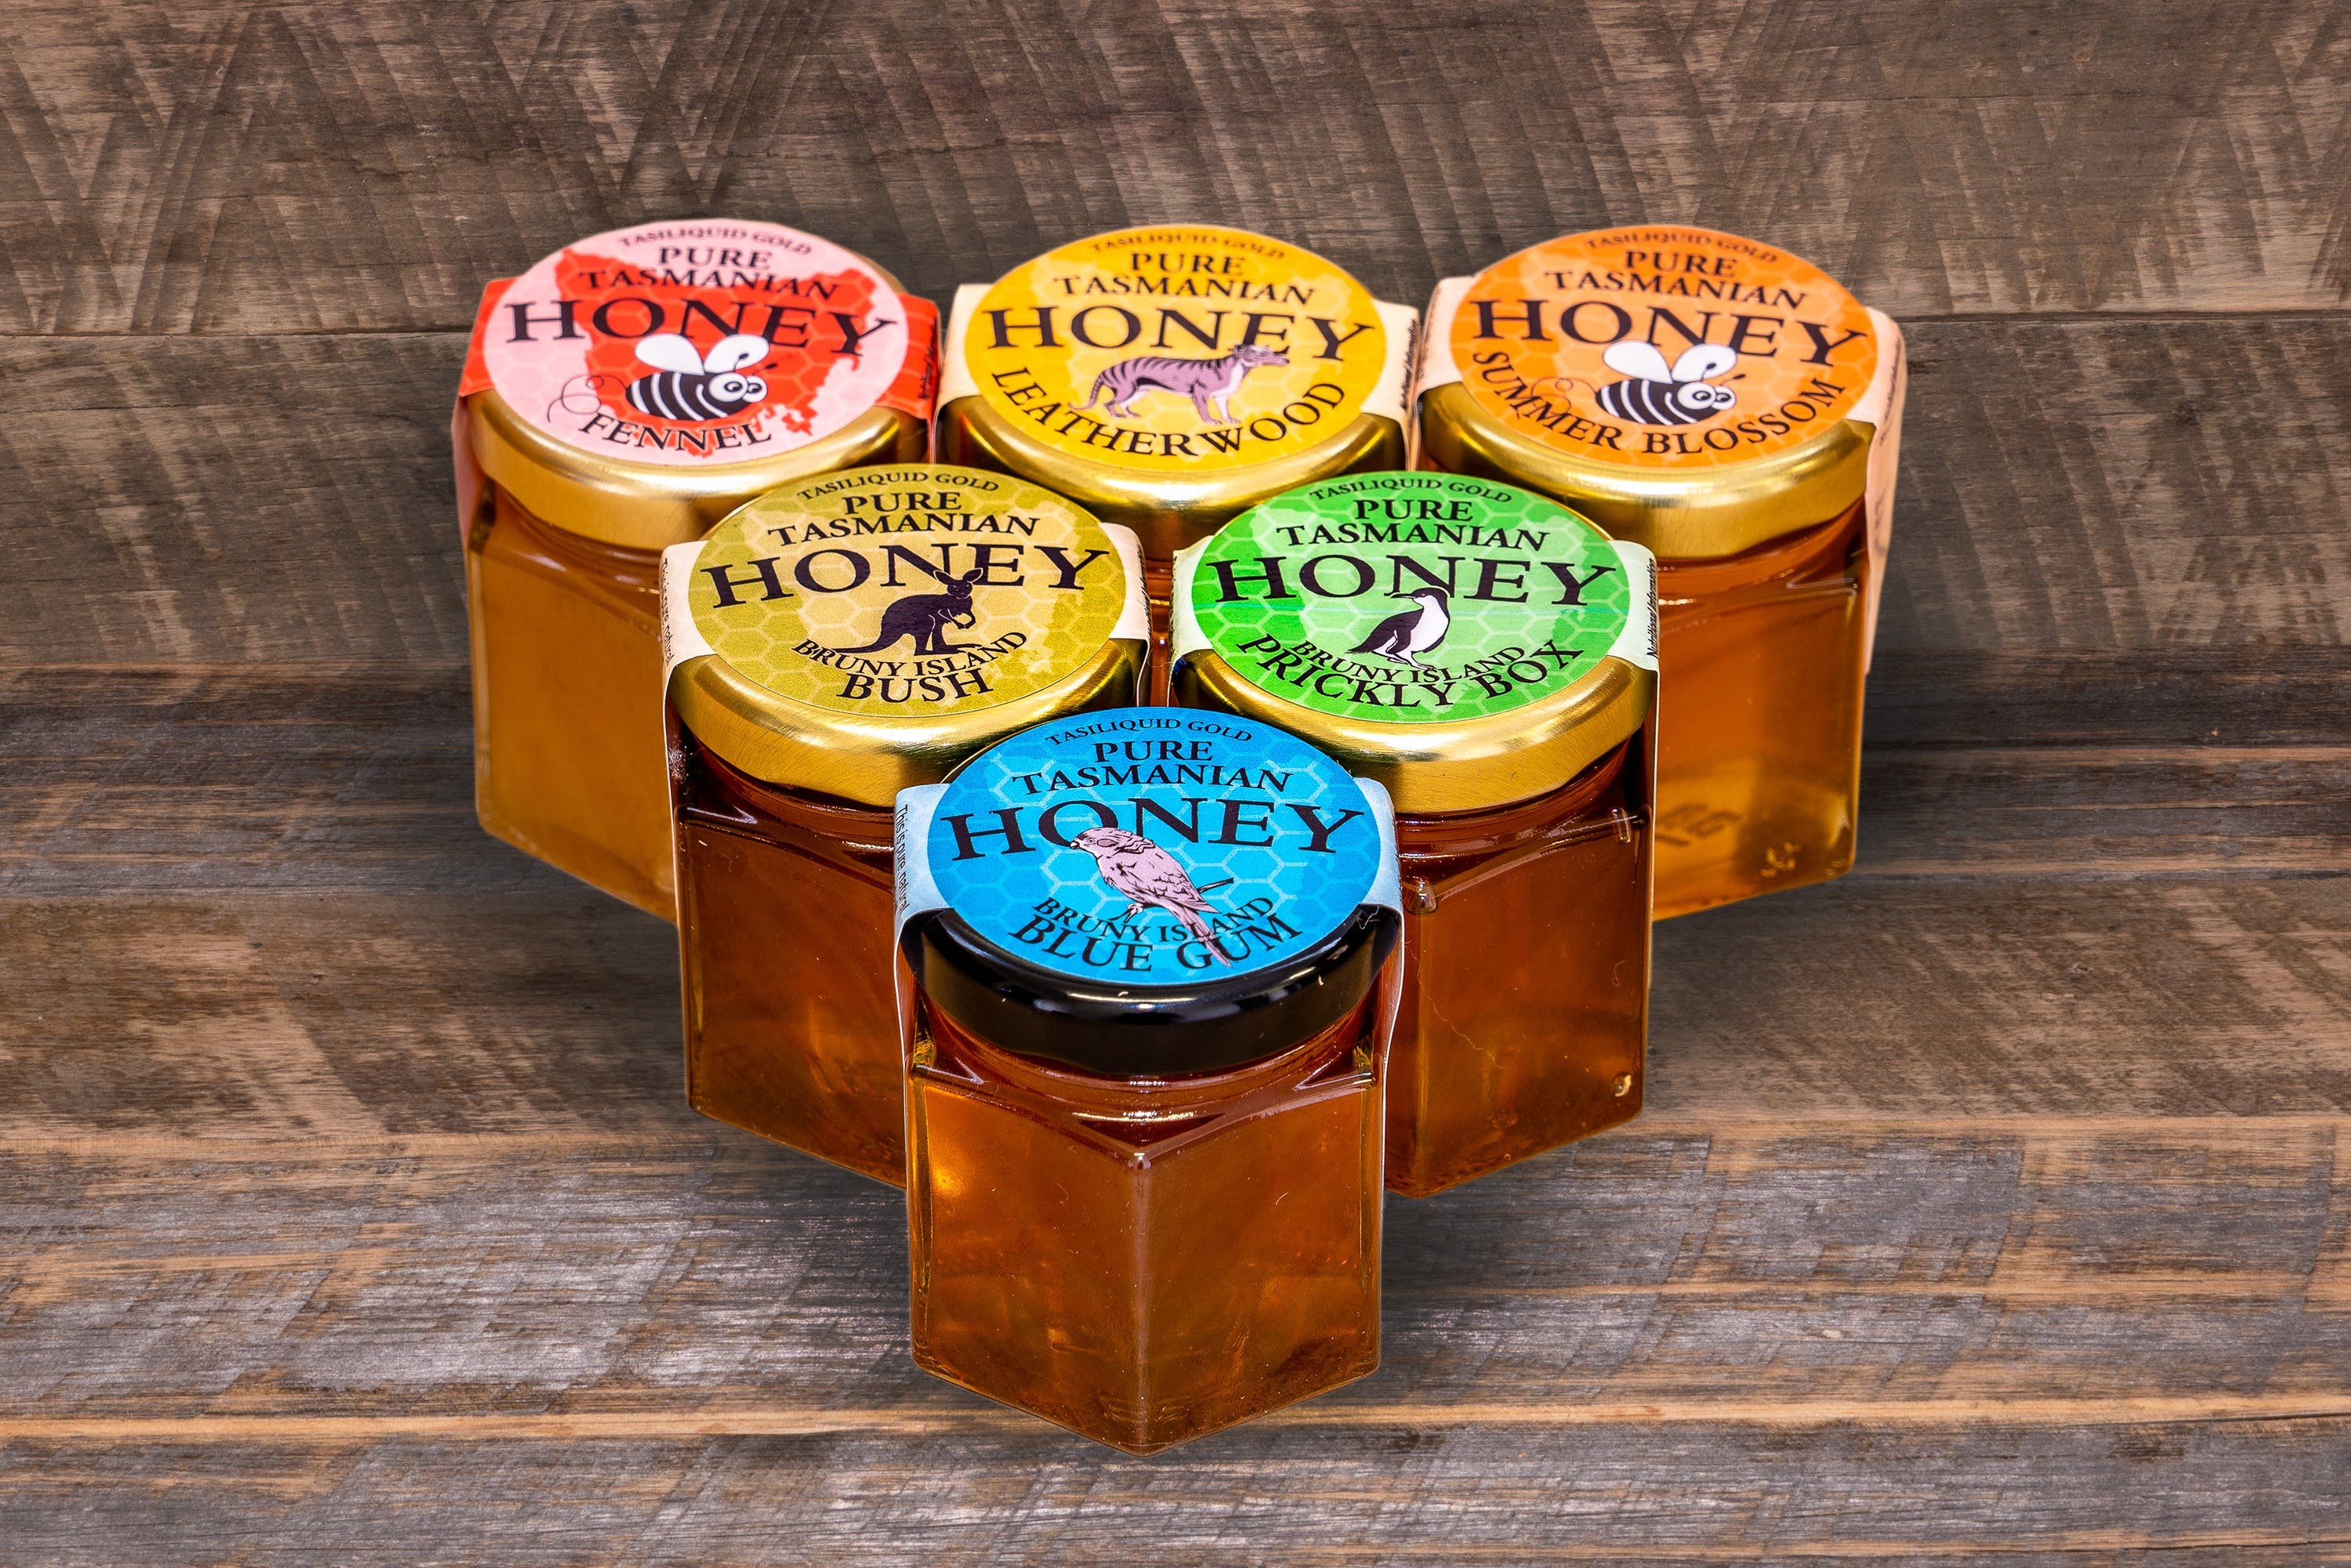 Bruny Island Honey Company - Bruny Island